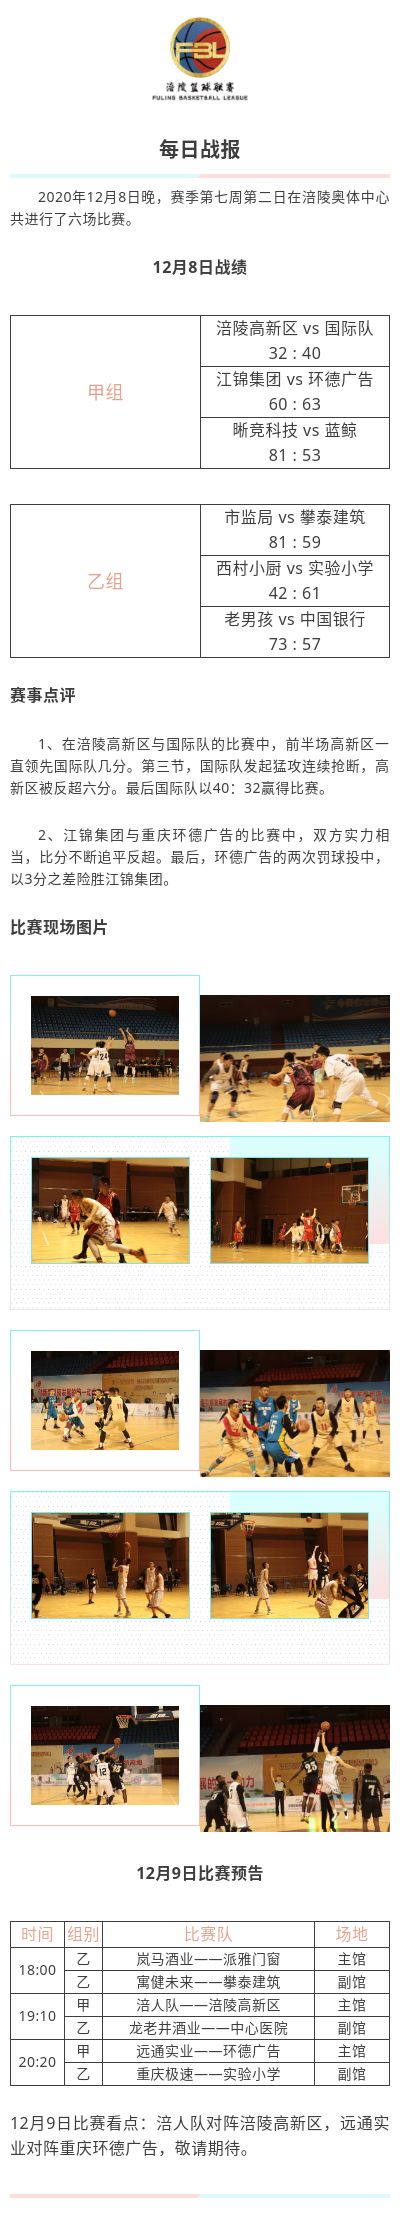 涪陵高新区·涪陵篮球联赛（FBL）2020赛季每日战报12.8